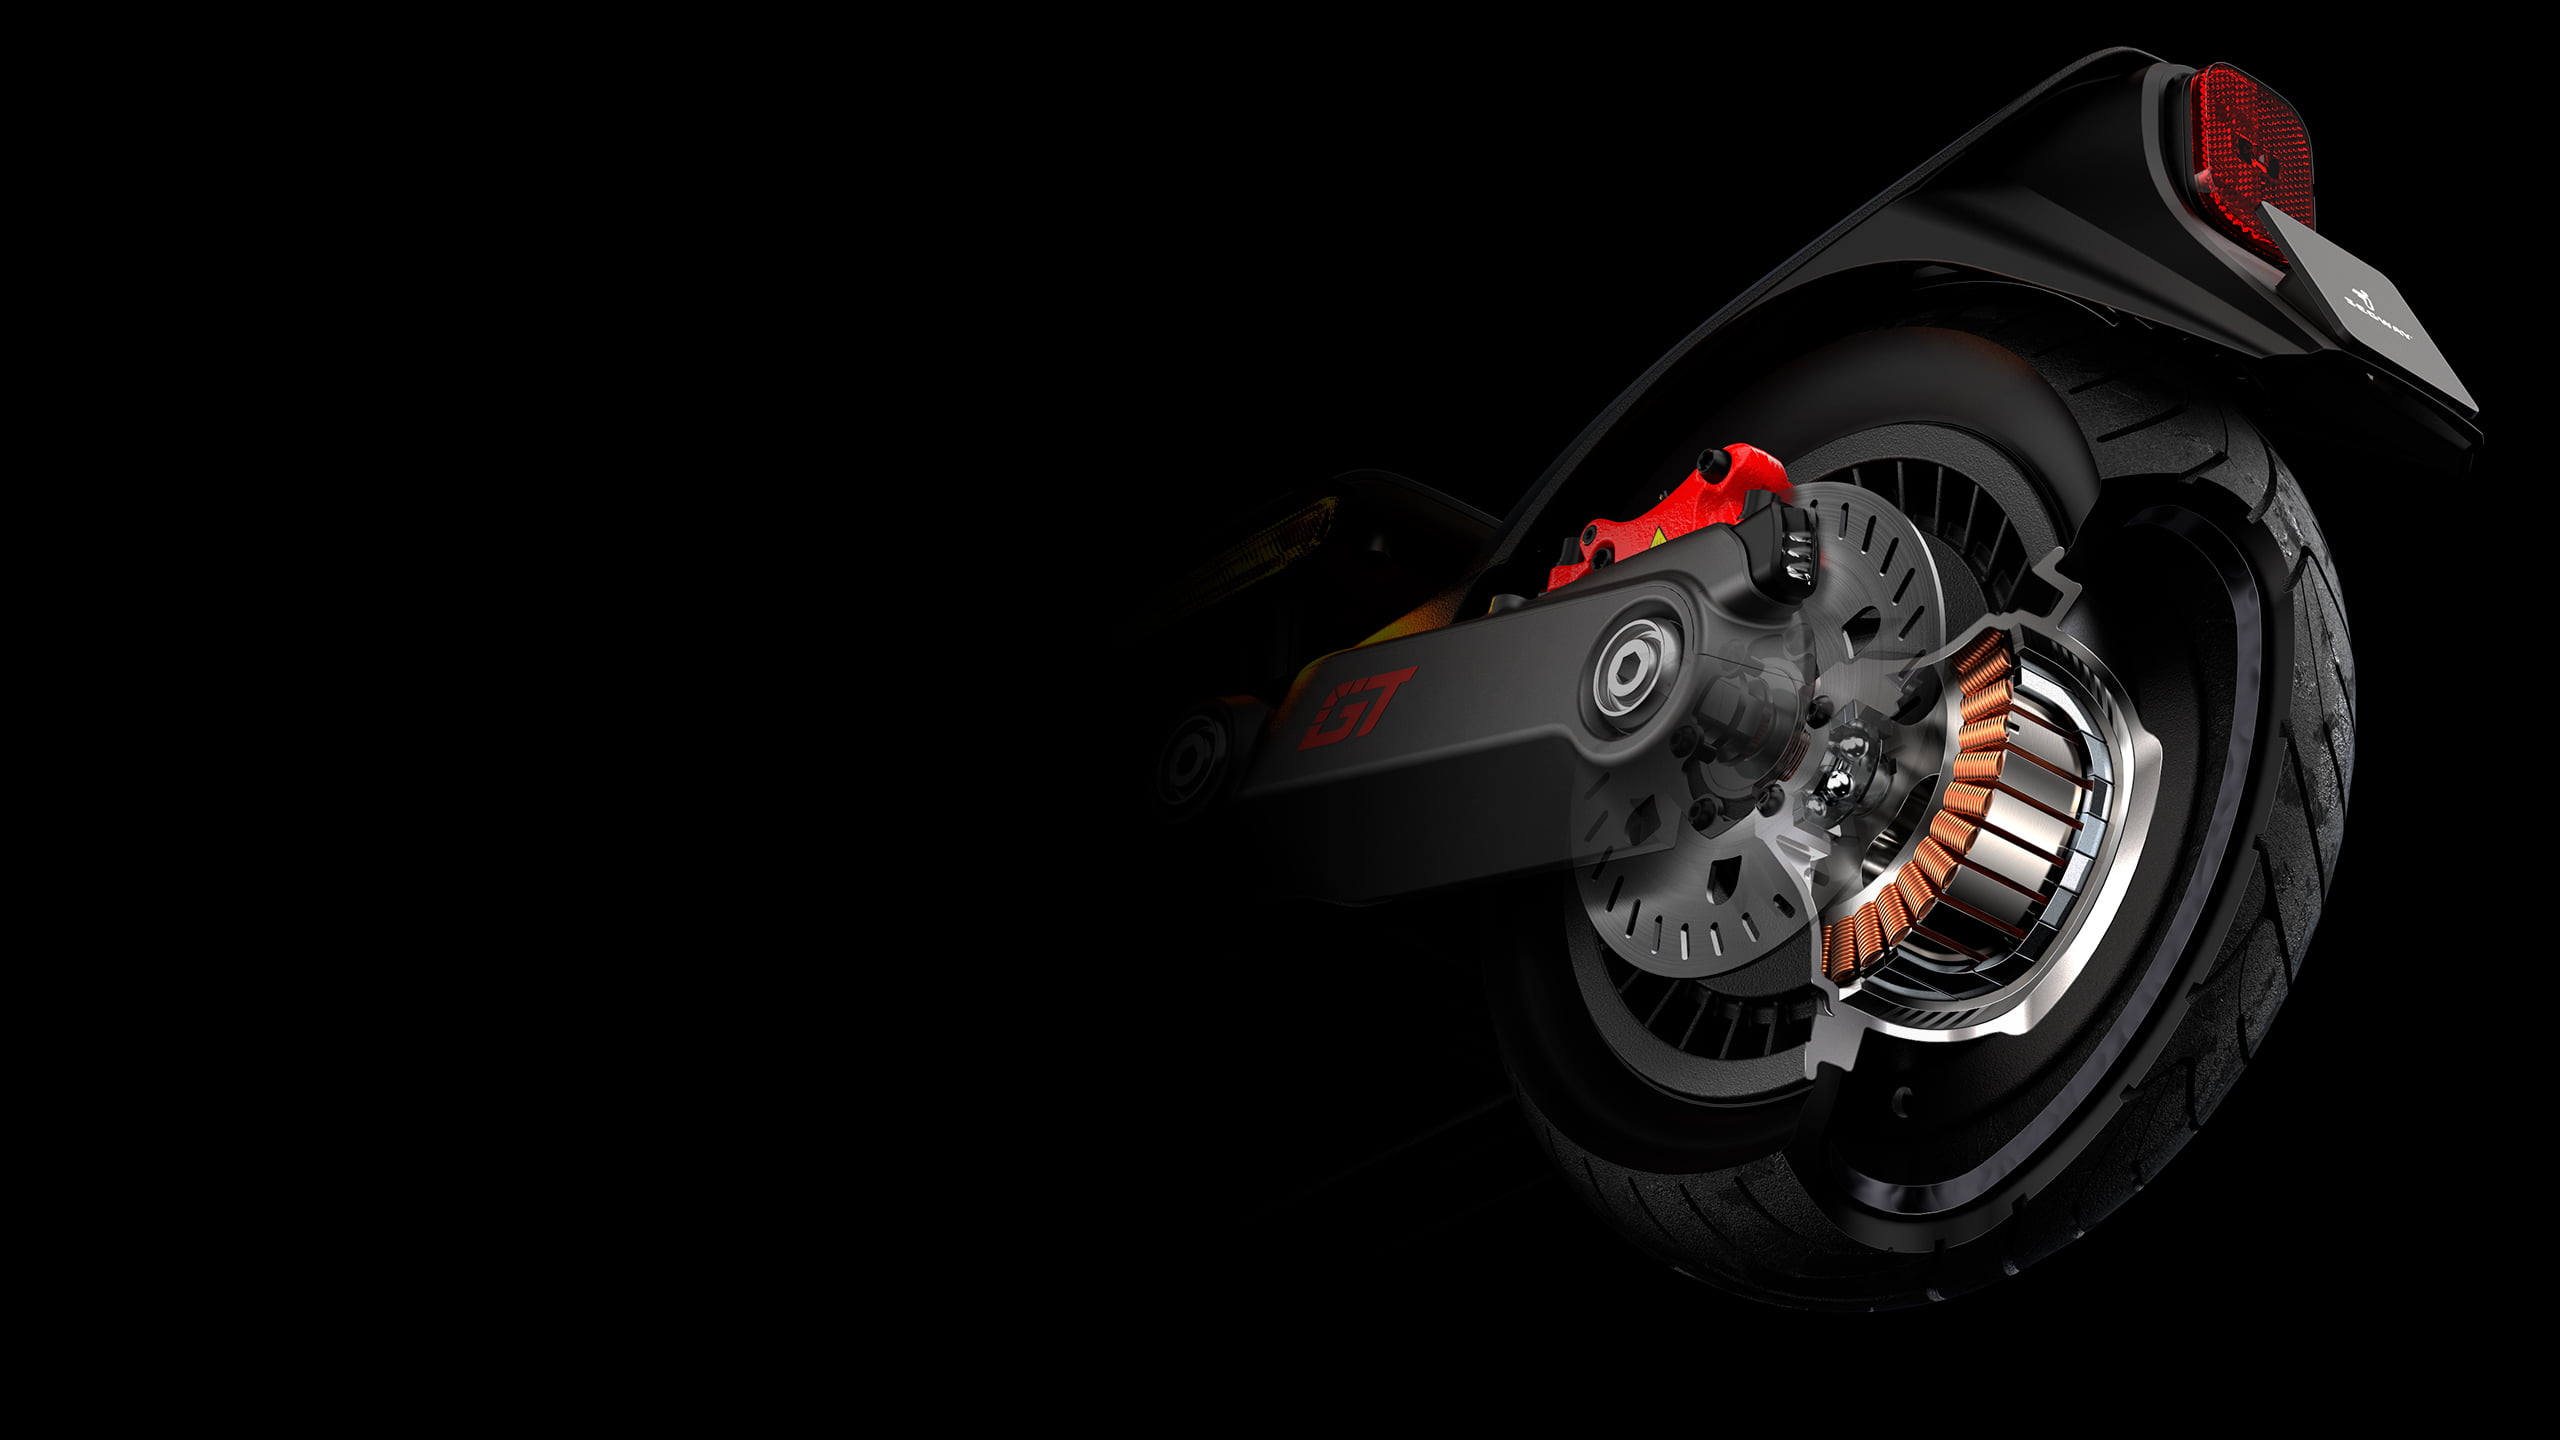 Ninebot SuperScooter GT2 оснащён двумя моторами суммарной мощностью в 6000 Вт и обеспечивает электросамокату максимальную скорость до 70 км\ч